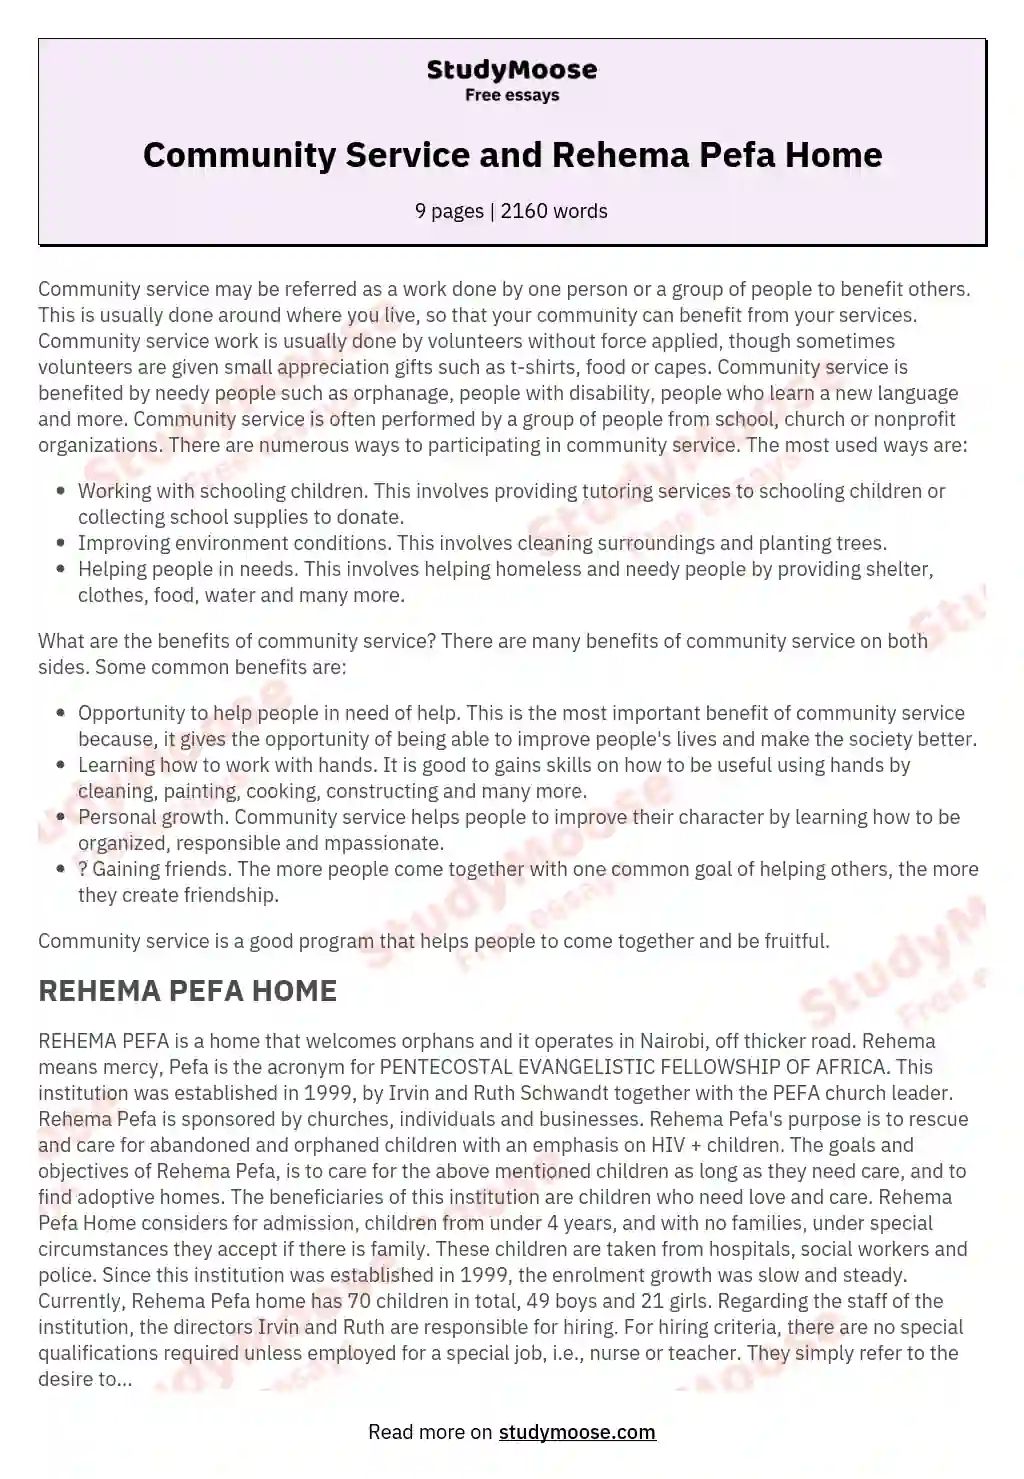 Community Service and Rehema Pefa Home essay